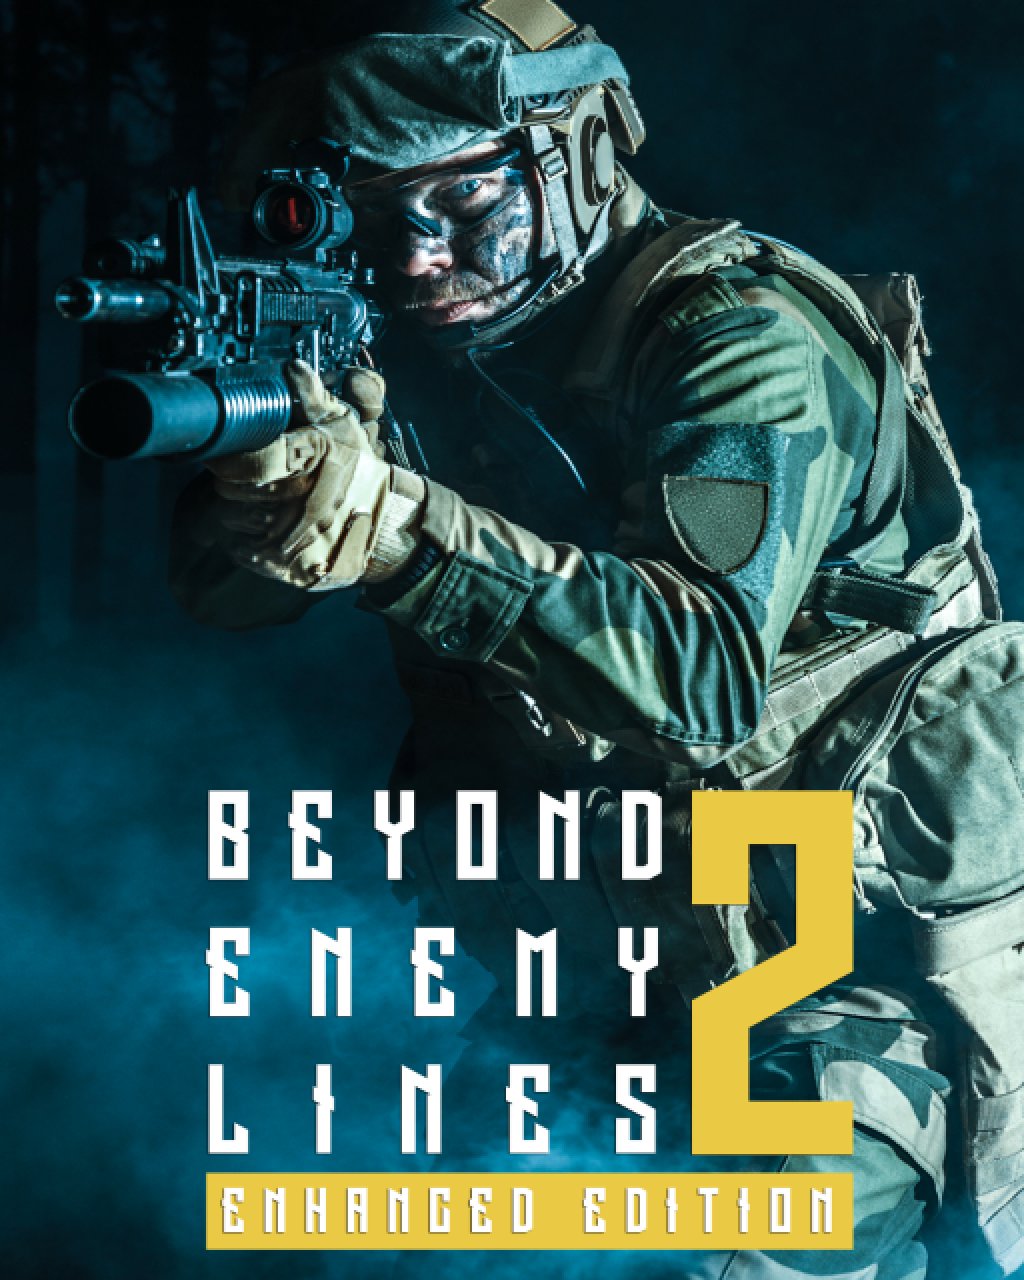 Beyond Enemy Lines 2 Enhanced Edition